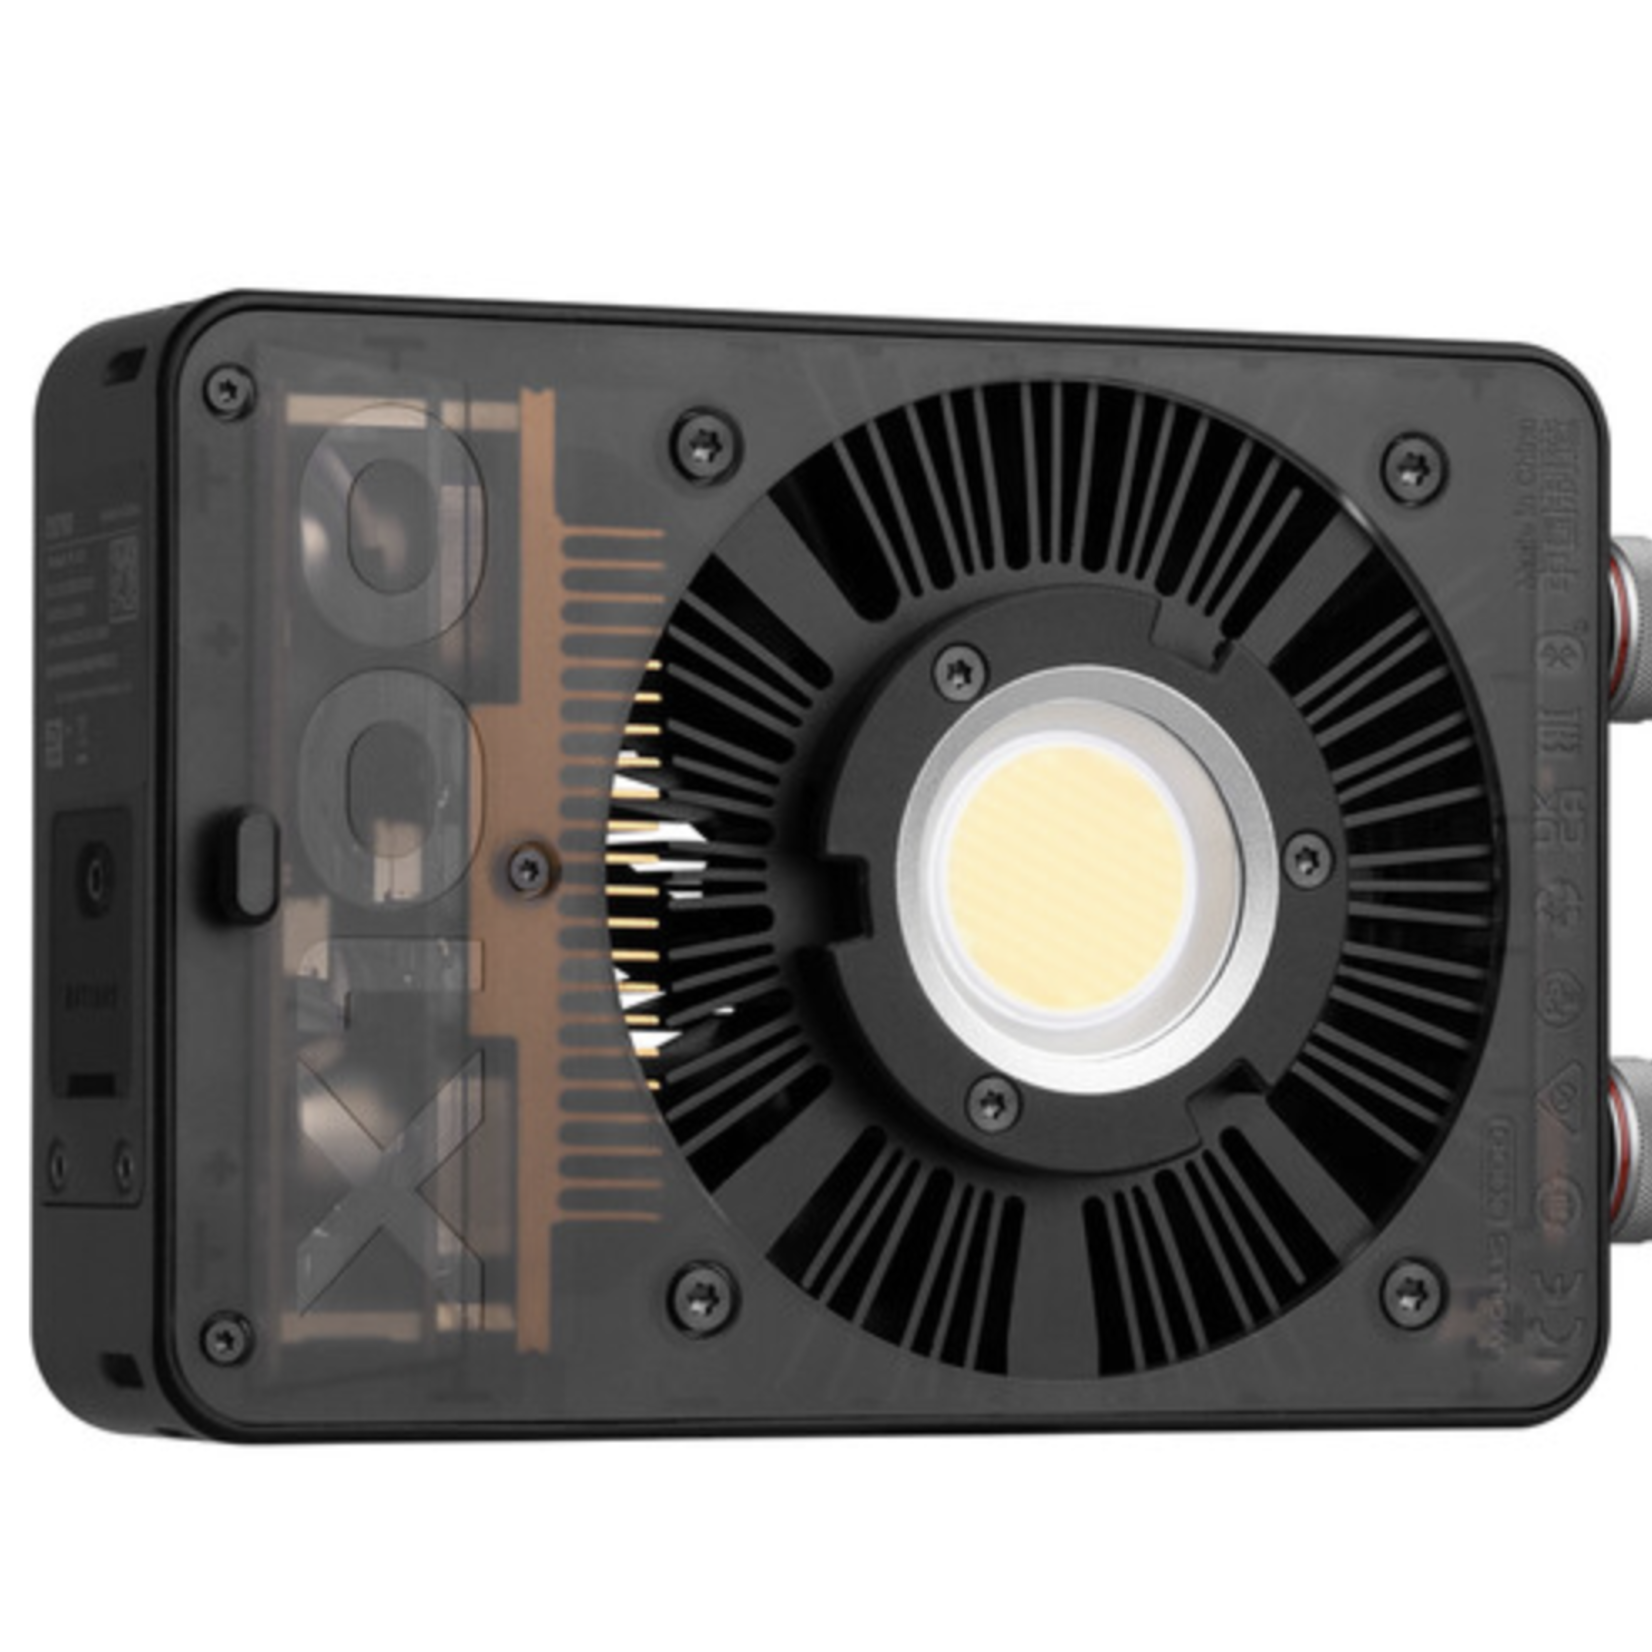 Zhiyun Zhiyun MOLUS X100 Bi-Color Pocket COB Monolight (Pro Kit)